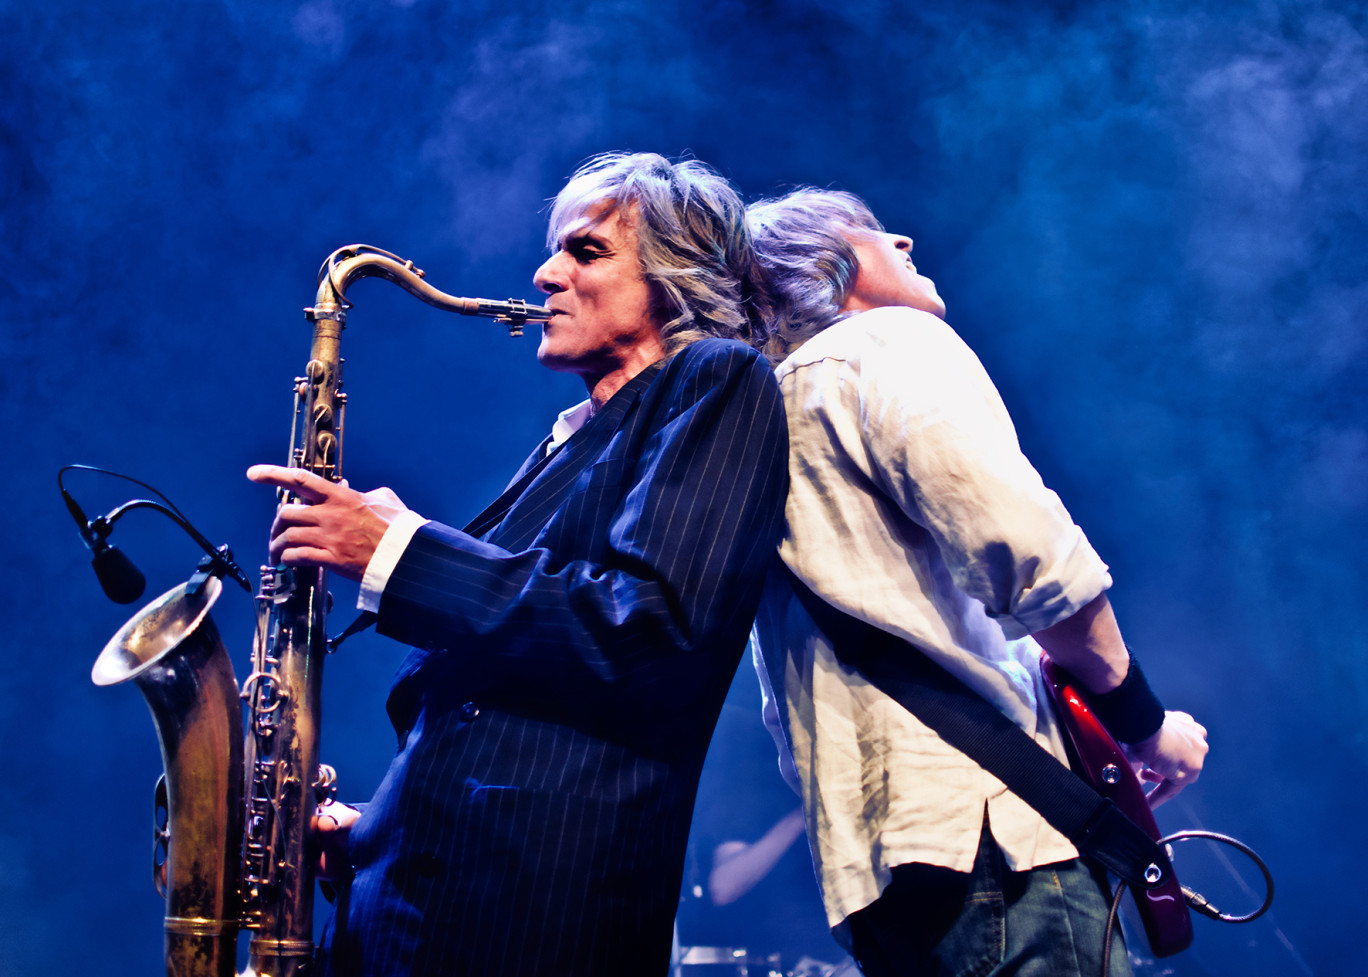 Le saxophoniste Chris White, membre du groupe originel Dire Straits, sera sur la scène du Zénith de Nancy le 3 octobre à l’occasion du Dire Straits Experience.